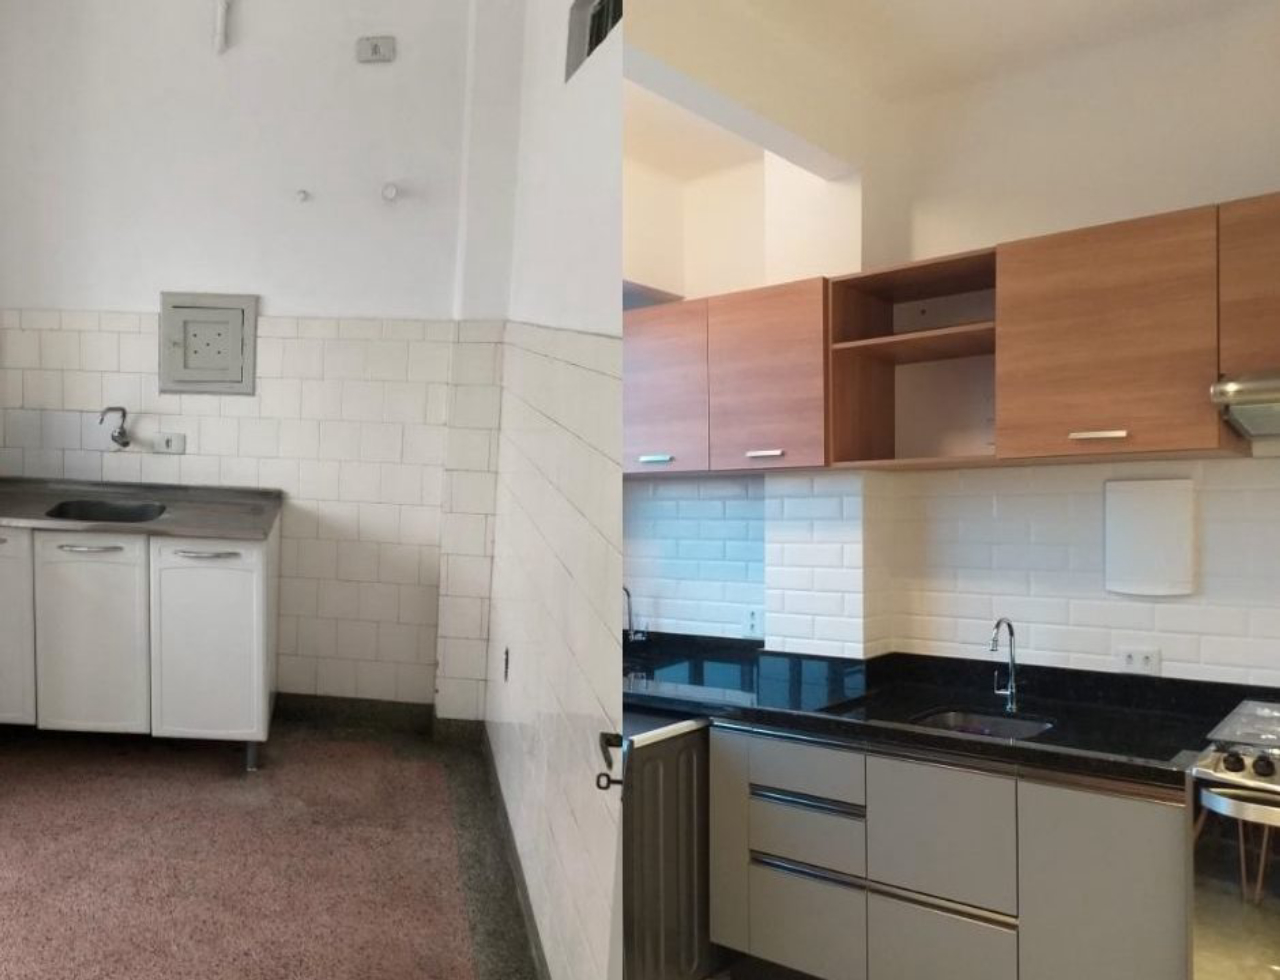 Antes e depois da área da cozinha, que foi integrada aos outros espaços sociais.